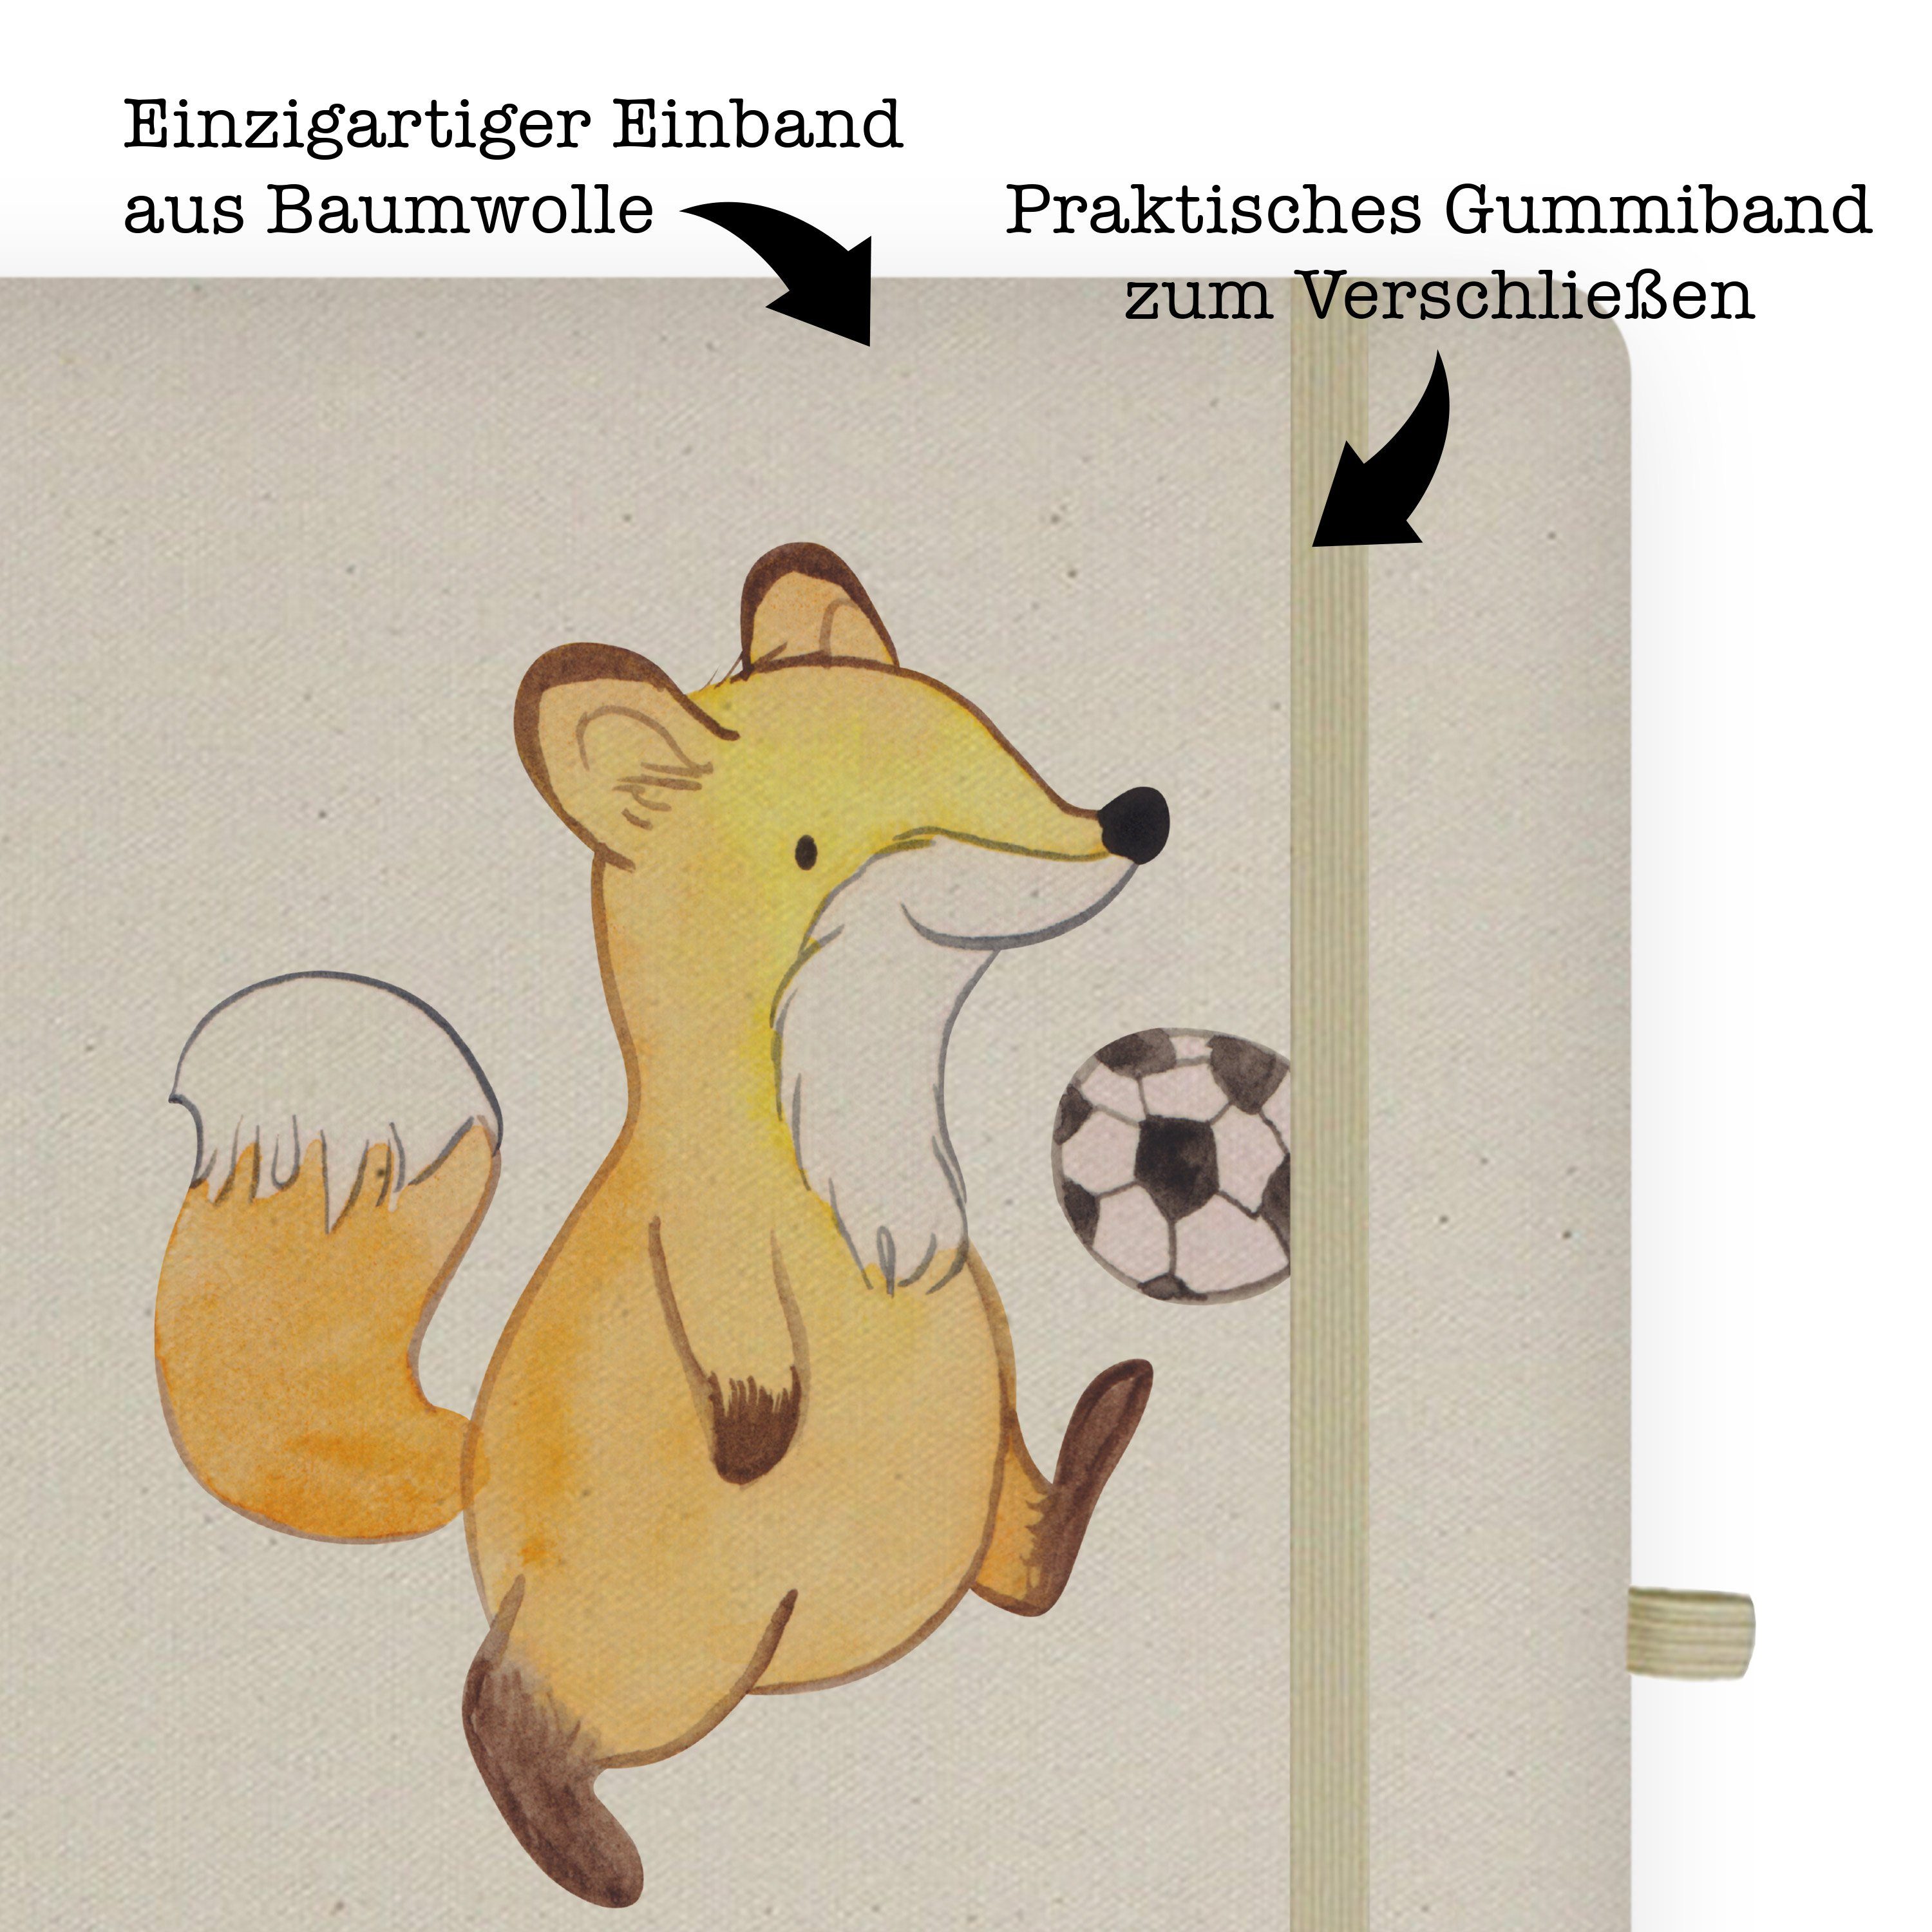 & Panda - Mr. Mrs. mit - Abschied, & Herz Geschenk, Fußballer Kladde, Mr. Panda Mrs. Notizbuch Transparent Schrei